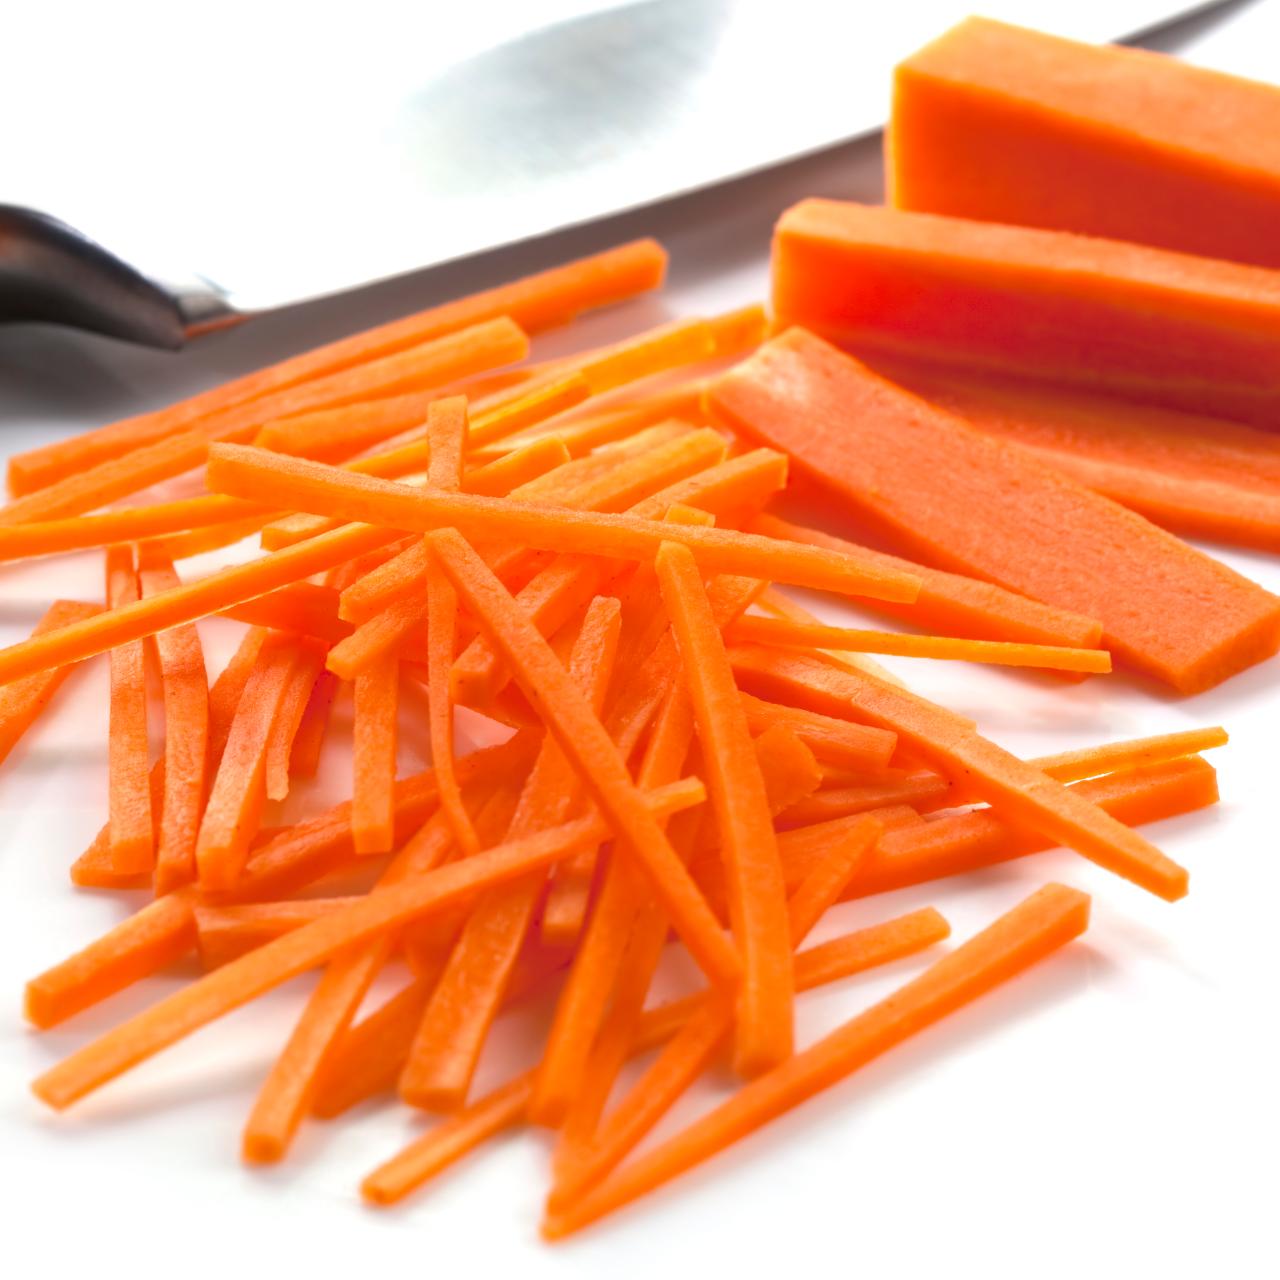 How To Cut Carrots: 4 Basic Cuts